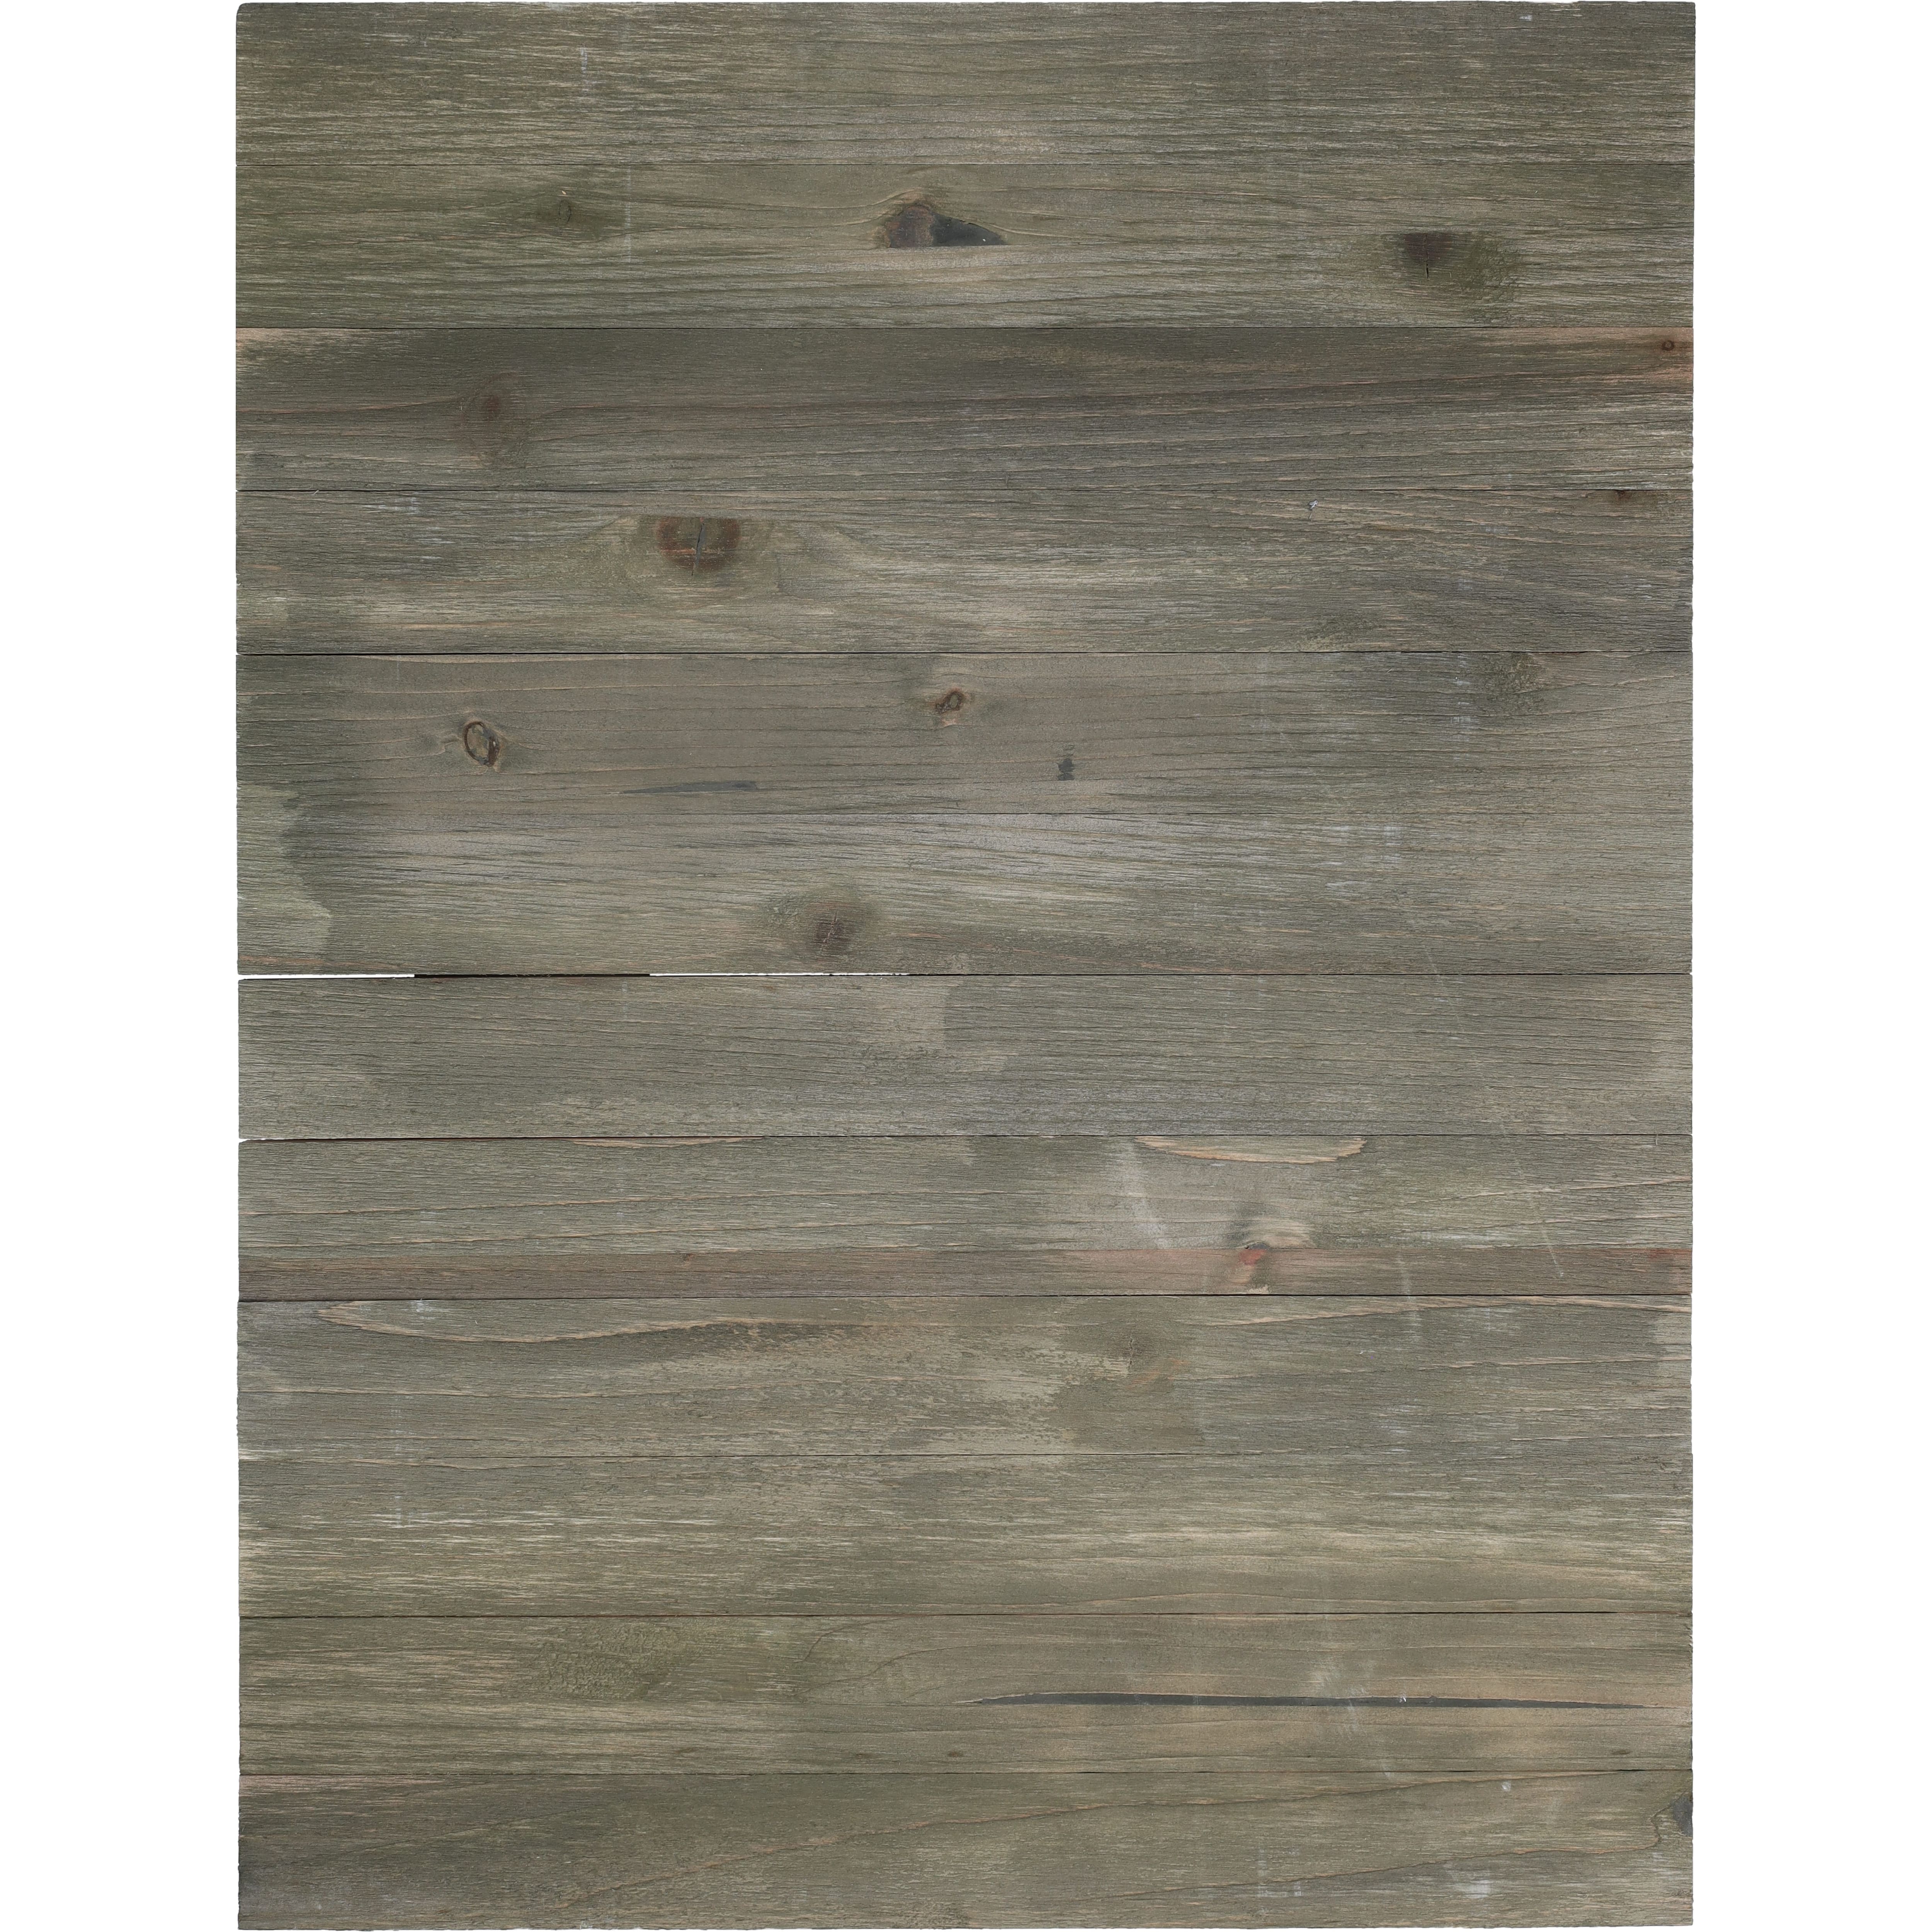 Hampton Art&#x2122; 18&#x22; x 24&#x22; Distressed Rustic Wood Panel